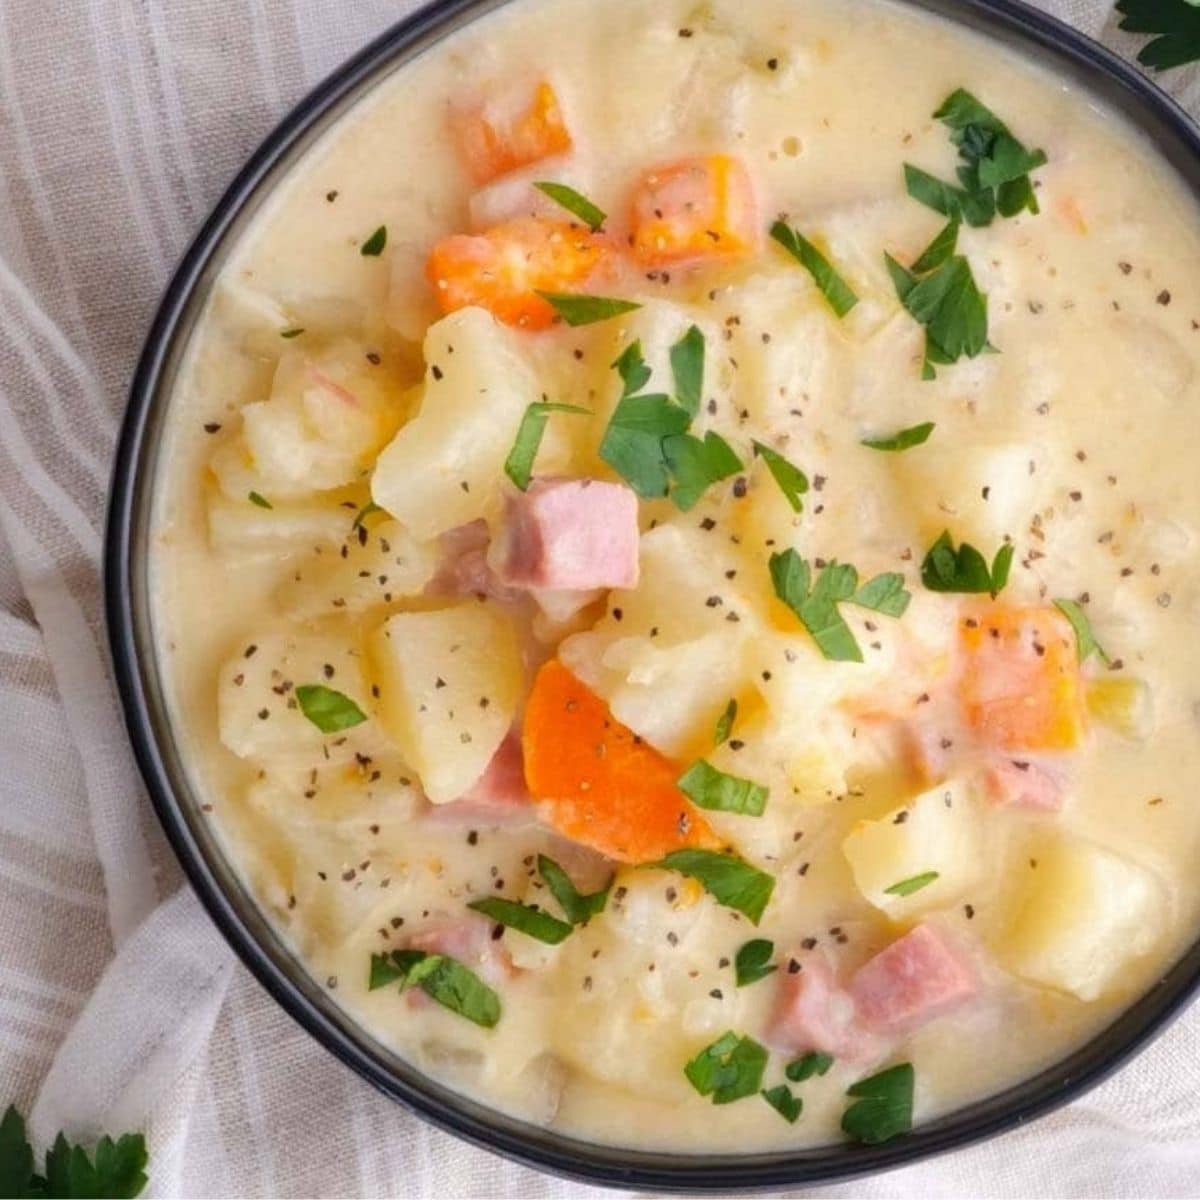 Easy Crockpot Potato Soup Recipe